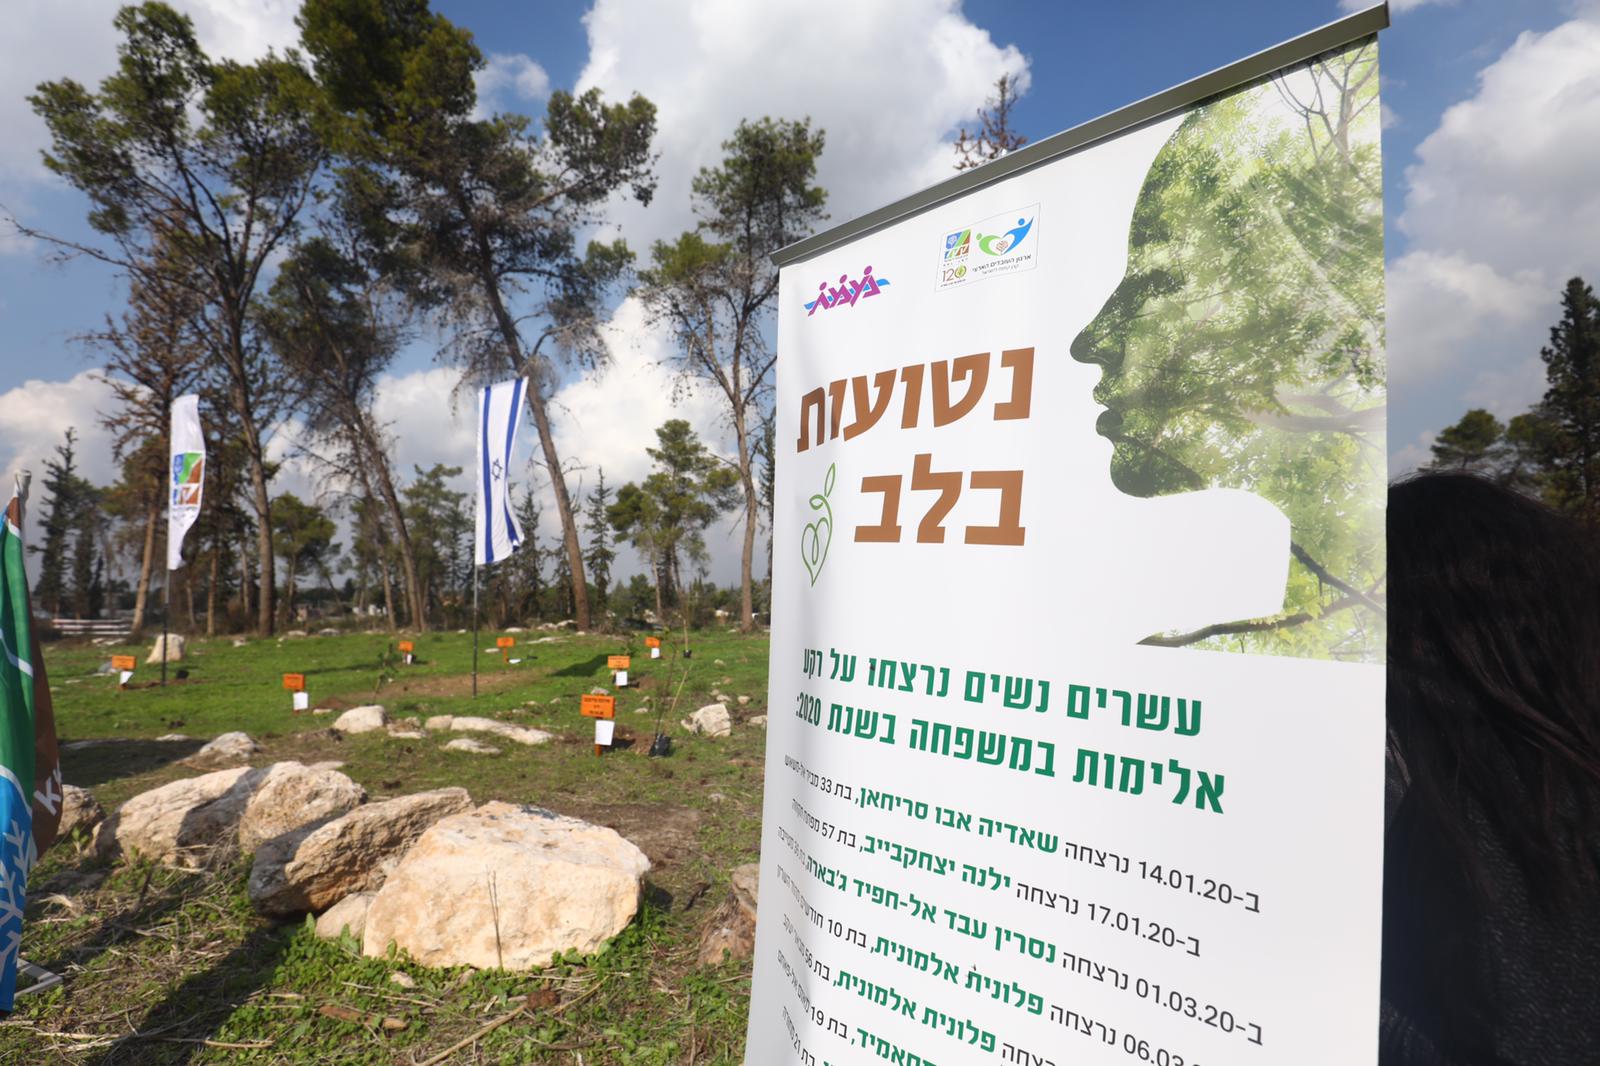 20 деревьев в память о жертвах насилия в Израиле - фото 1